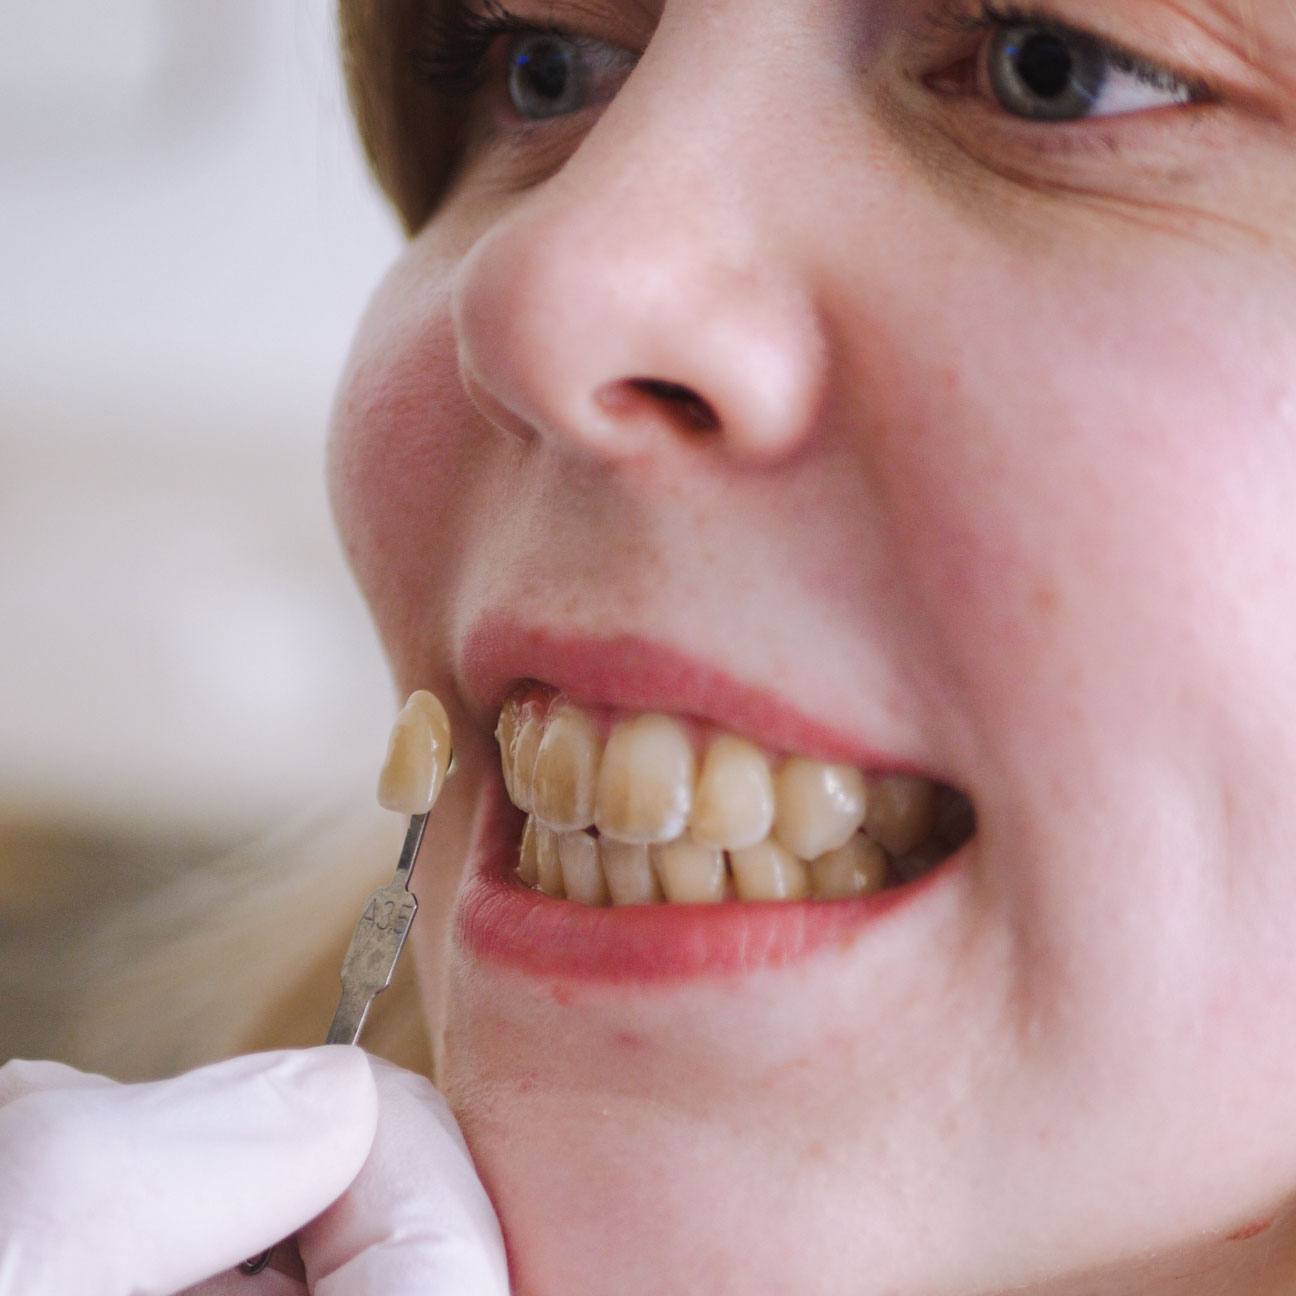 KAN MISFARVEDE TÆNDER BLIVE HVIDE IGEN? Svaret er ganske enkelt ja. Uanset om du har interne eller eksterne misfarvninger, kan du få lavet en tandblegning. På den måde kan du få et hvidt smil igen. Hus Falkoner Tandlægerne og Nørreport Tandlægerne kan du få foretaget en tandblegning, hvor du opnår et smukt og effektivt resultat, uden at skade tænderne.